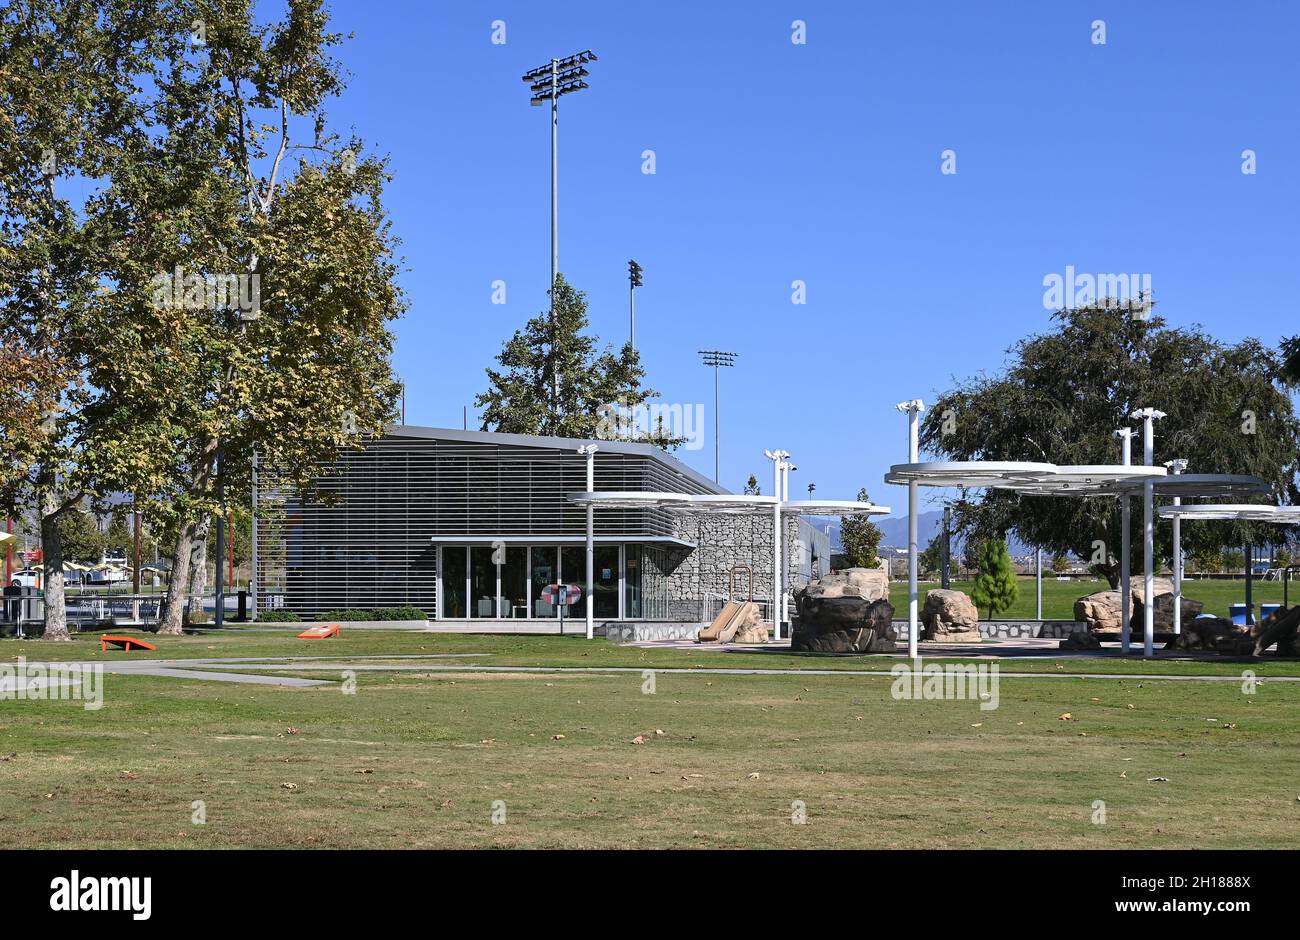 IRVINE, KALIFORNIEN - 15 Okt 2021: Besucherzentrum und Kids Rock Playground im Orange County Great Park. Stockfoto